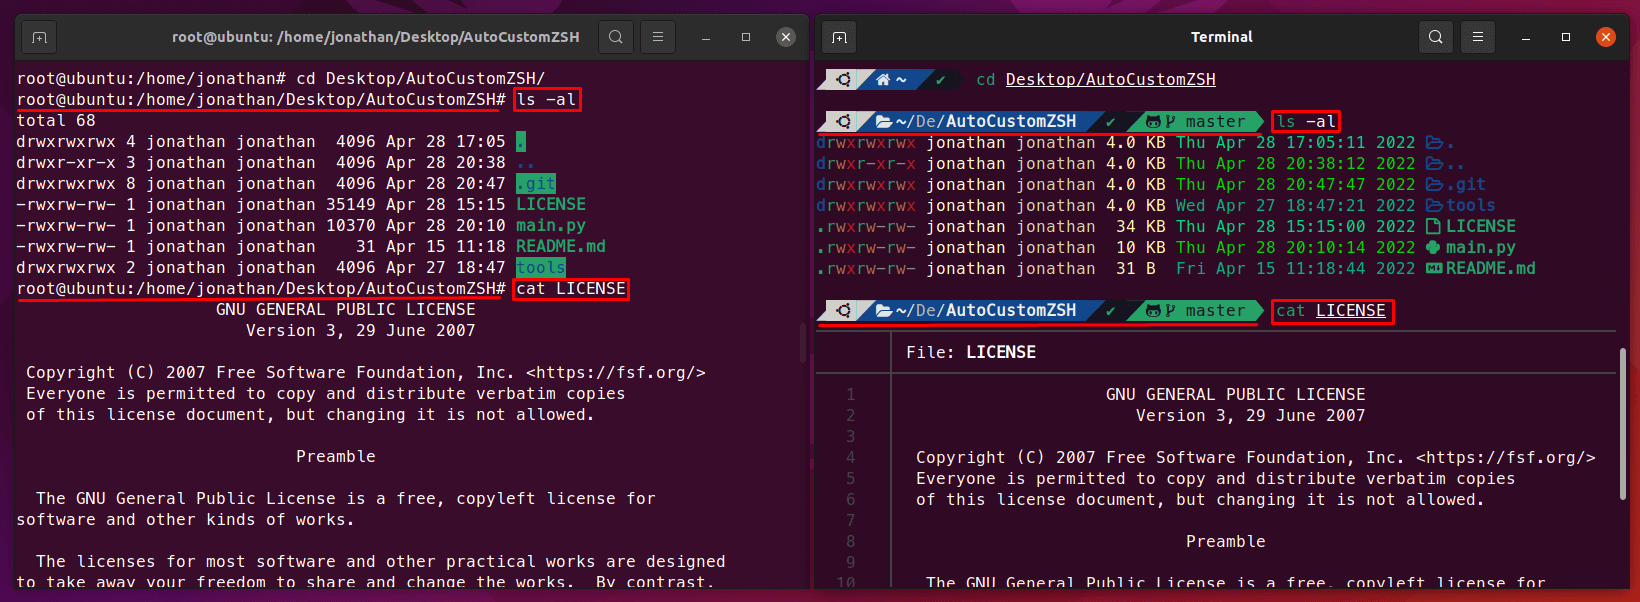 Vista normal de una terminal VS AutoCustomZSH | Ubuntu [Imagen propia]